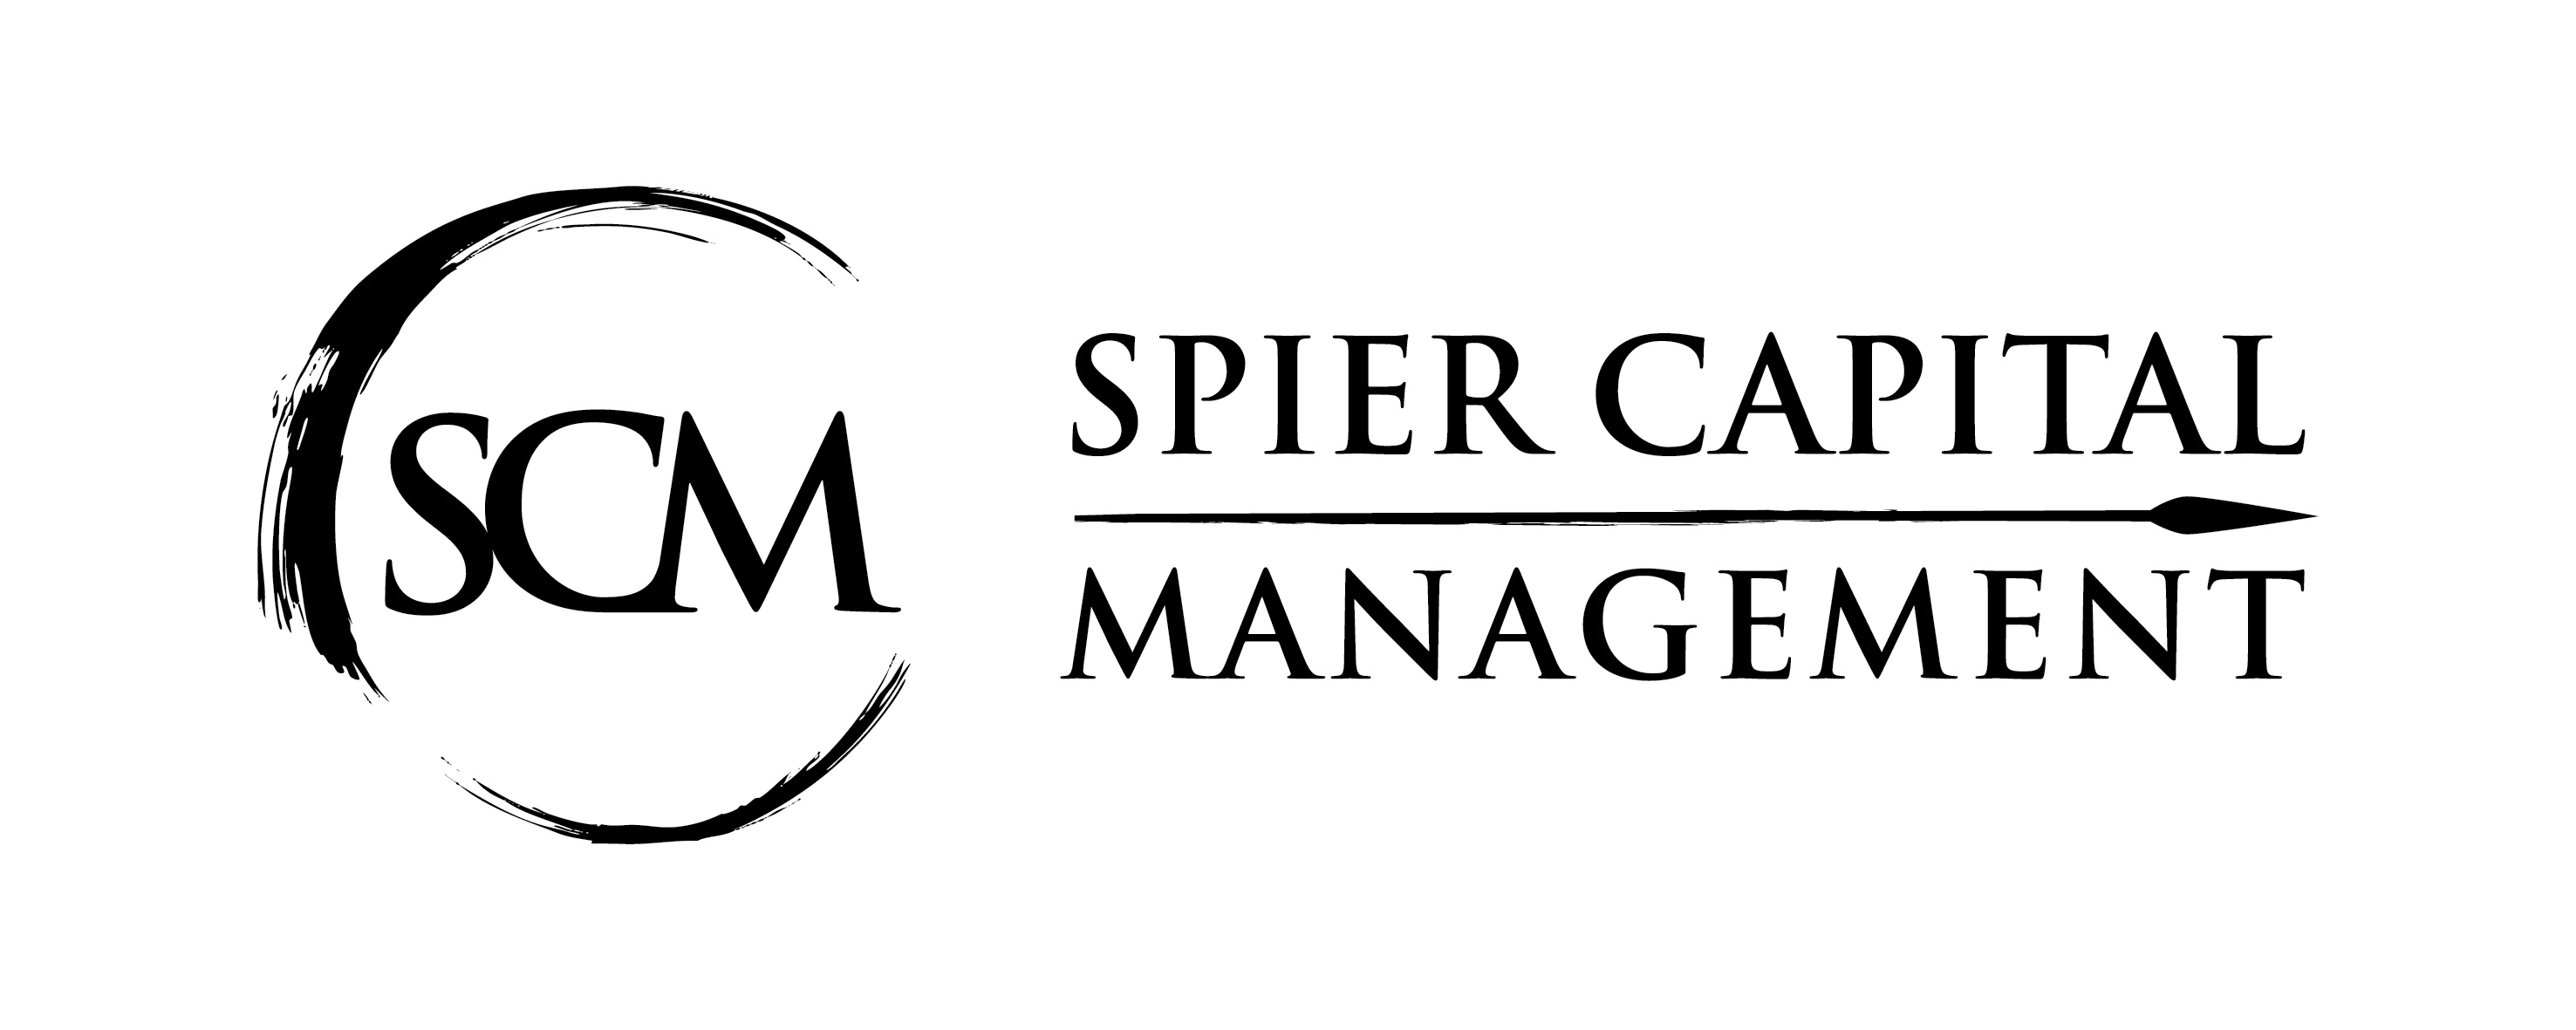 SpierCapital Management